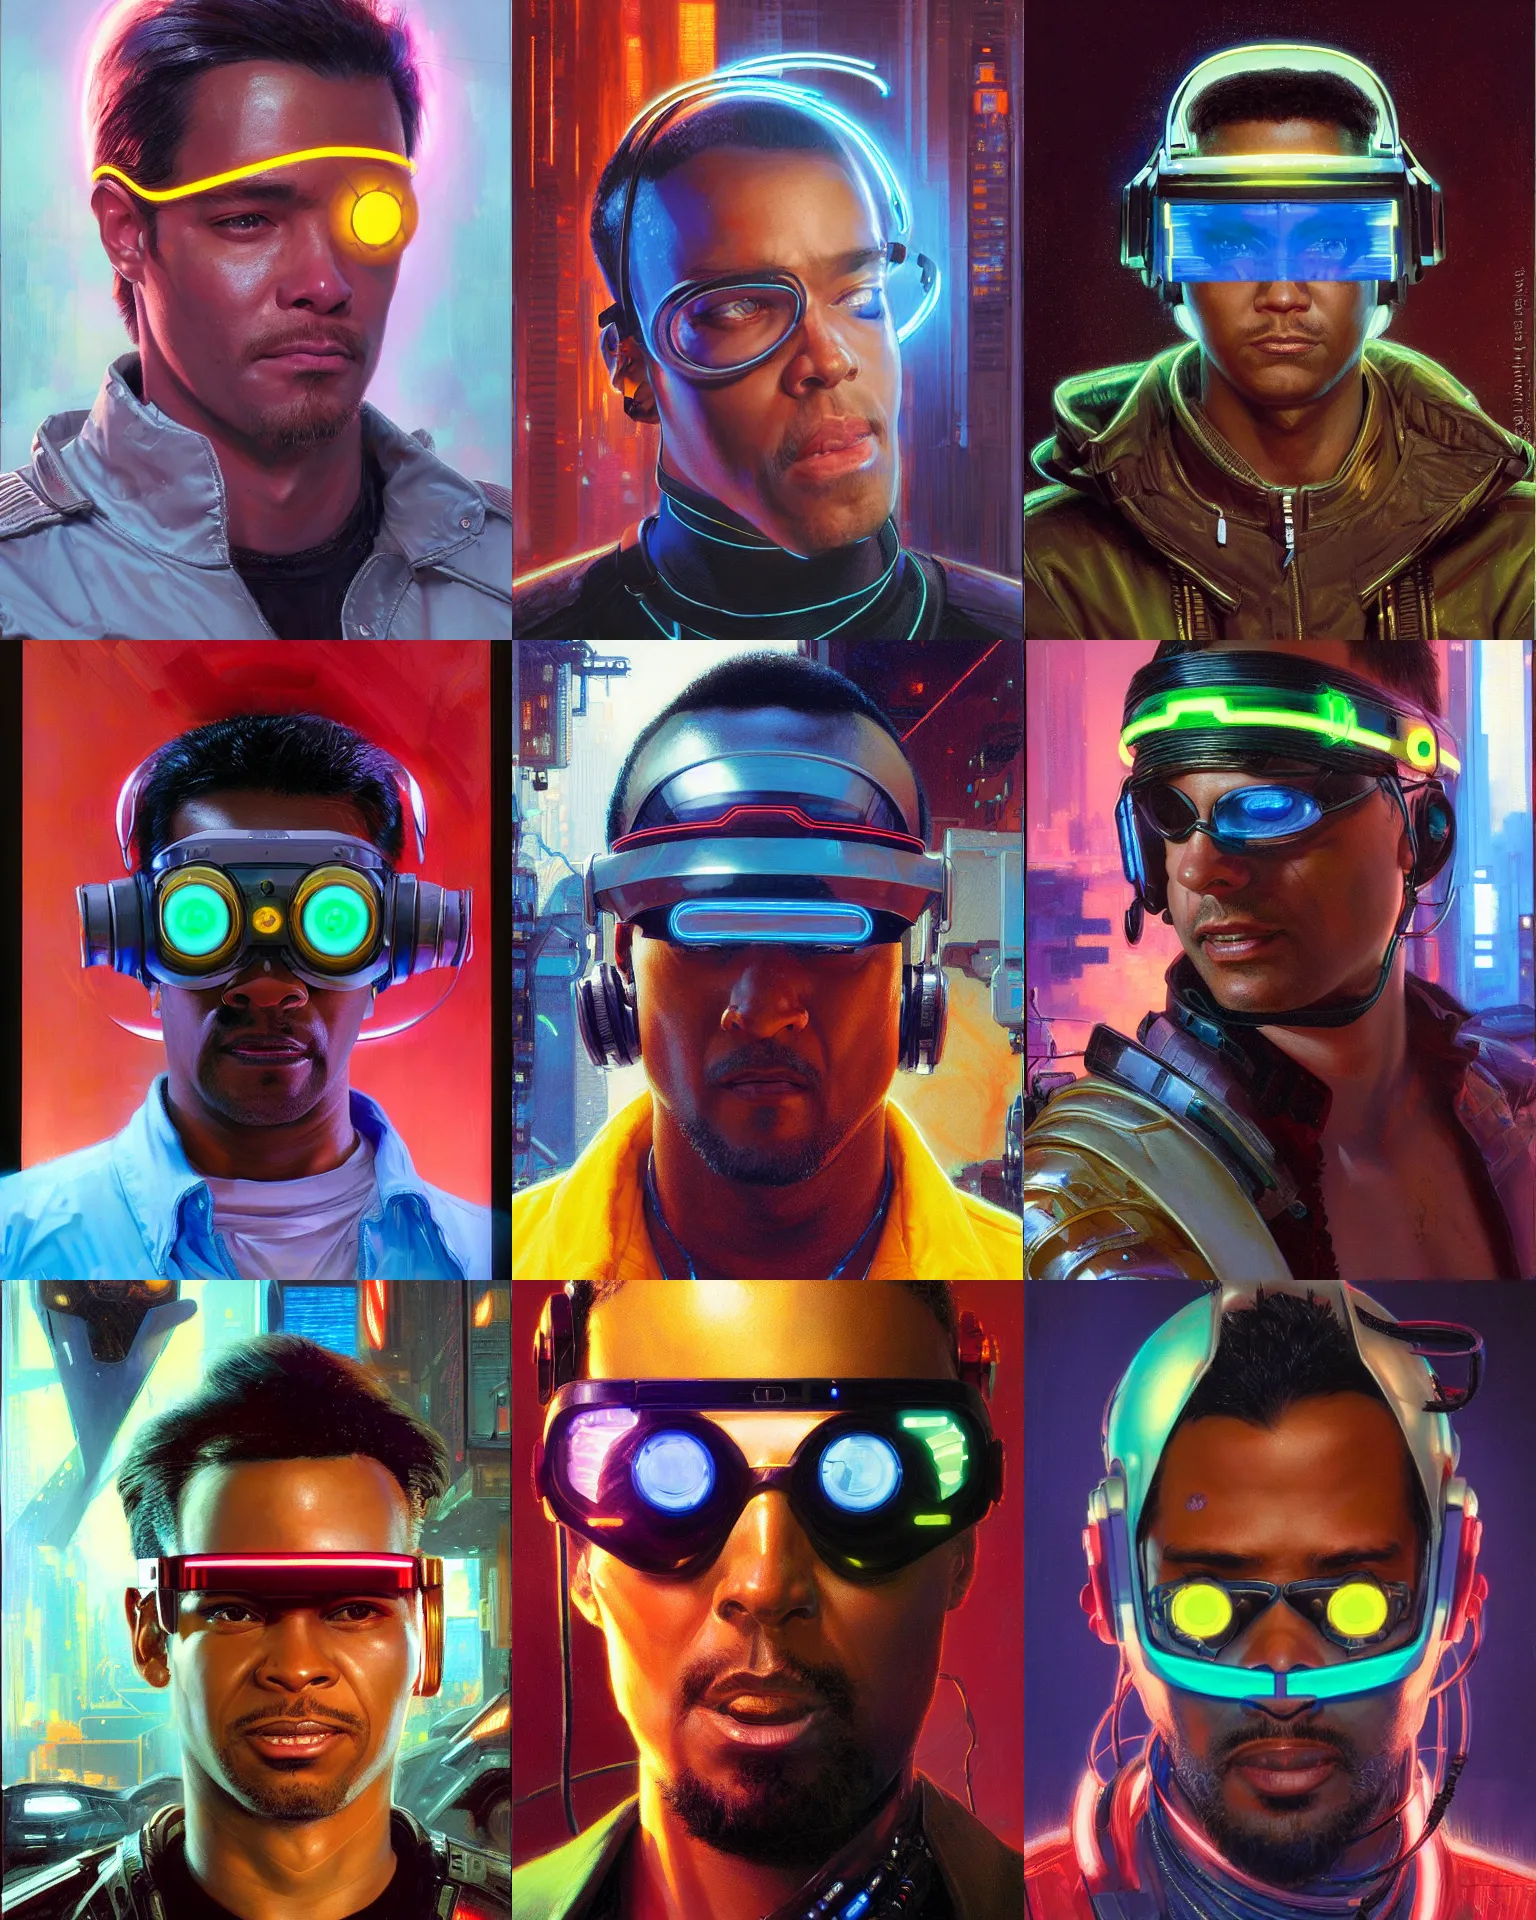 Prompt: digital neon cyberpunk male with geordi eye visor and headset headshot portrait painting by donato giancola, kilian eng, john berkey, j. c. leyendecker, mead schaeffer